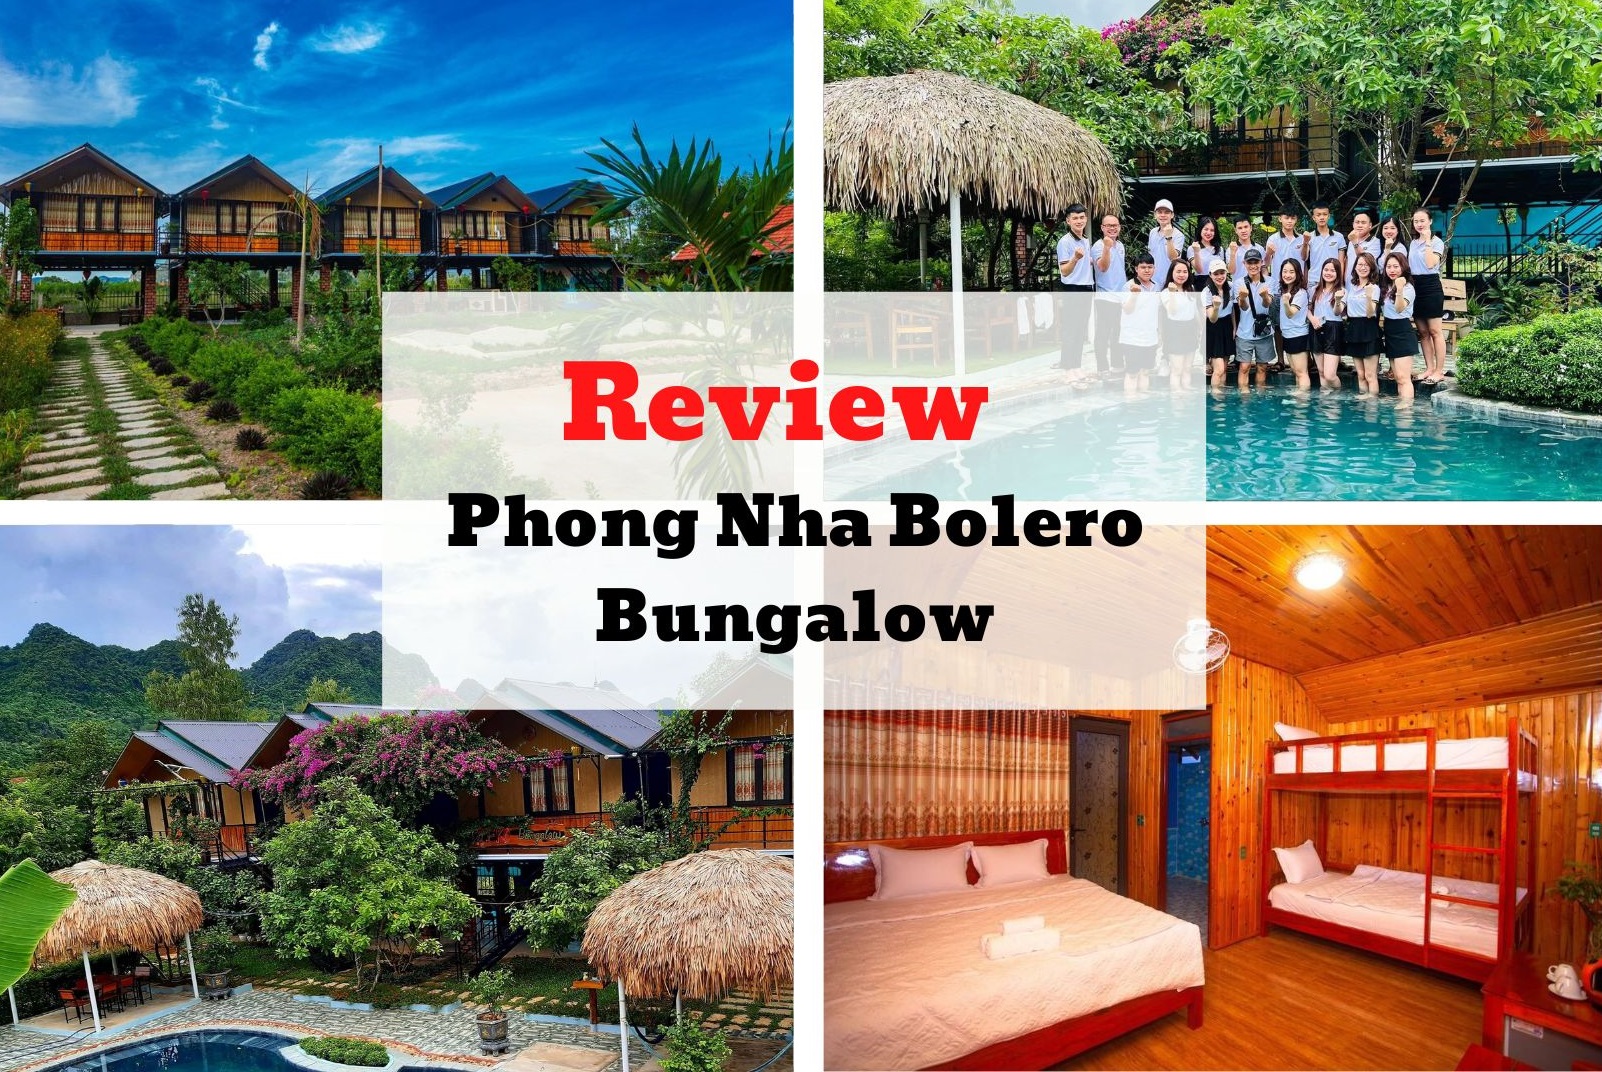 Review Phong Nha Bolero Bungalow - Bản nhạc dịu êm giữa lòng Quảng Bình